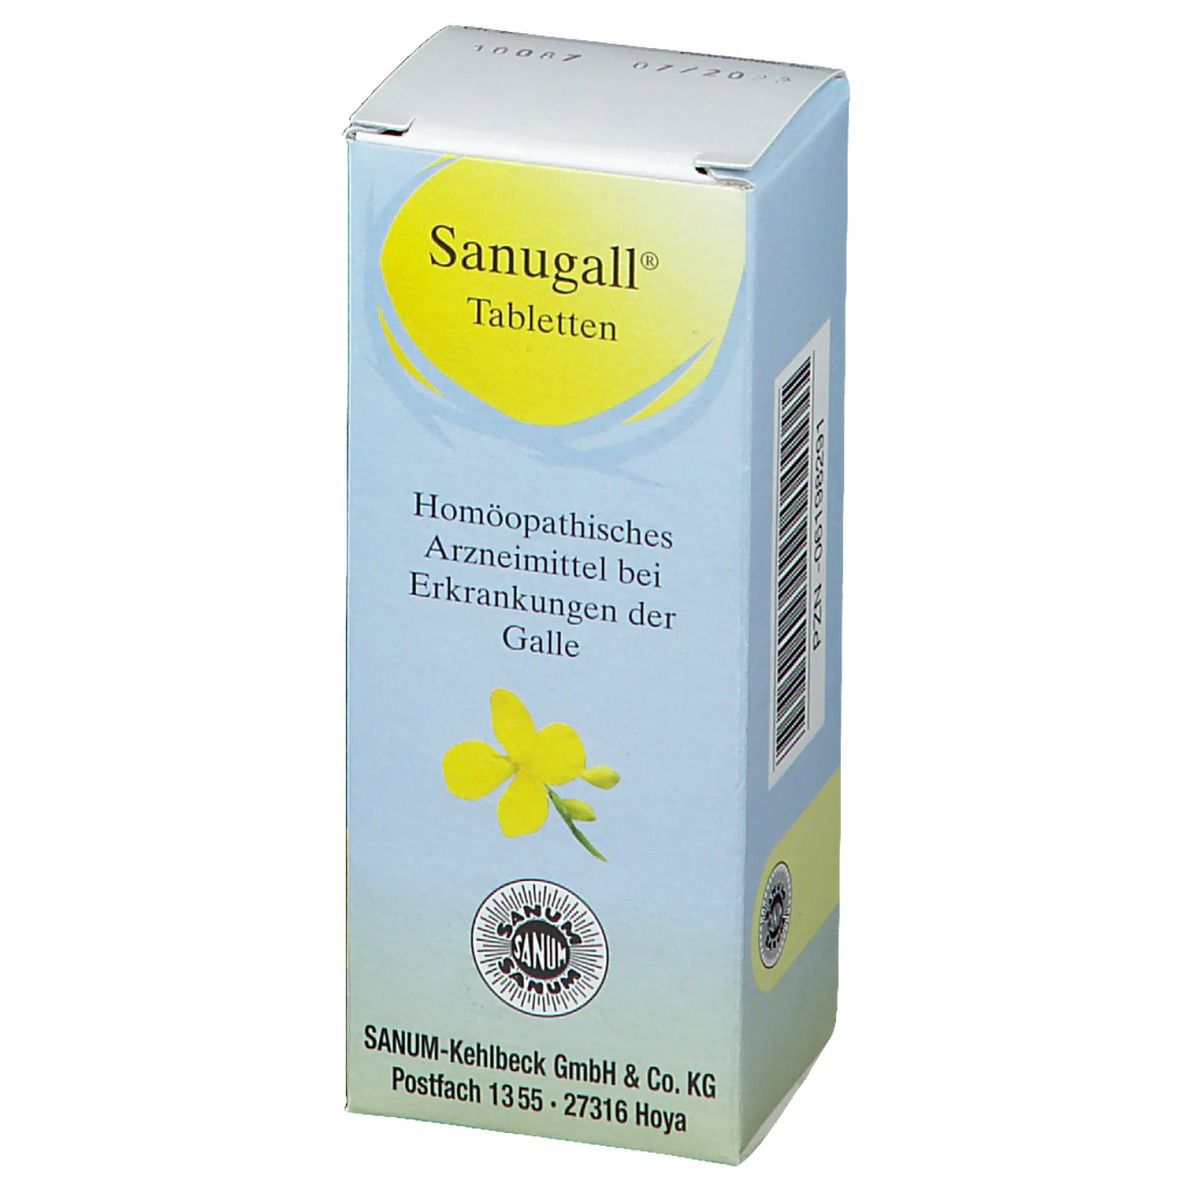 Sanugall® Tabletten